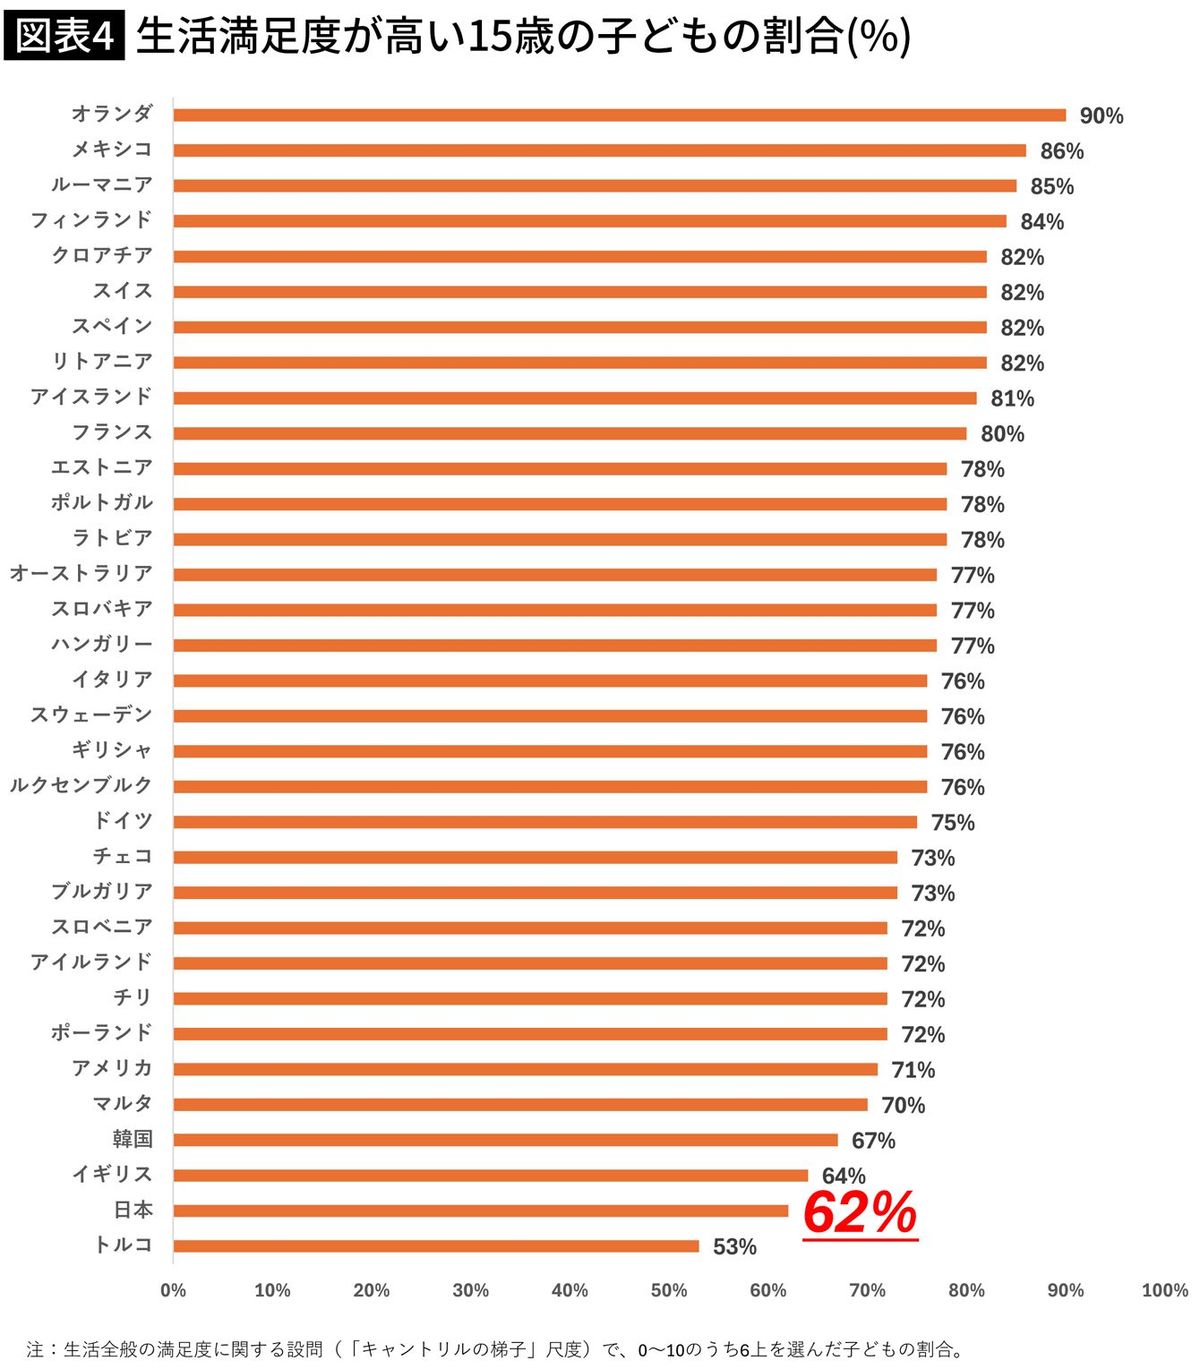 【図表】生活満足度が高い15歳の子どもの割合(%)